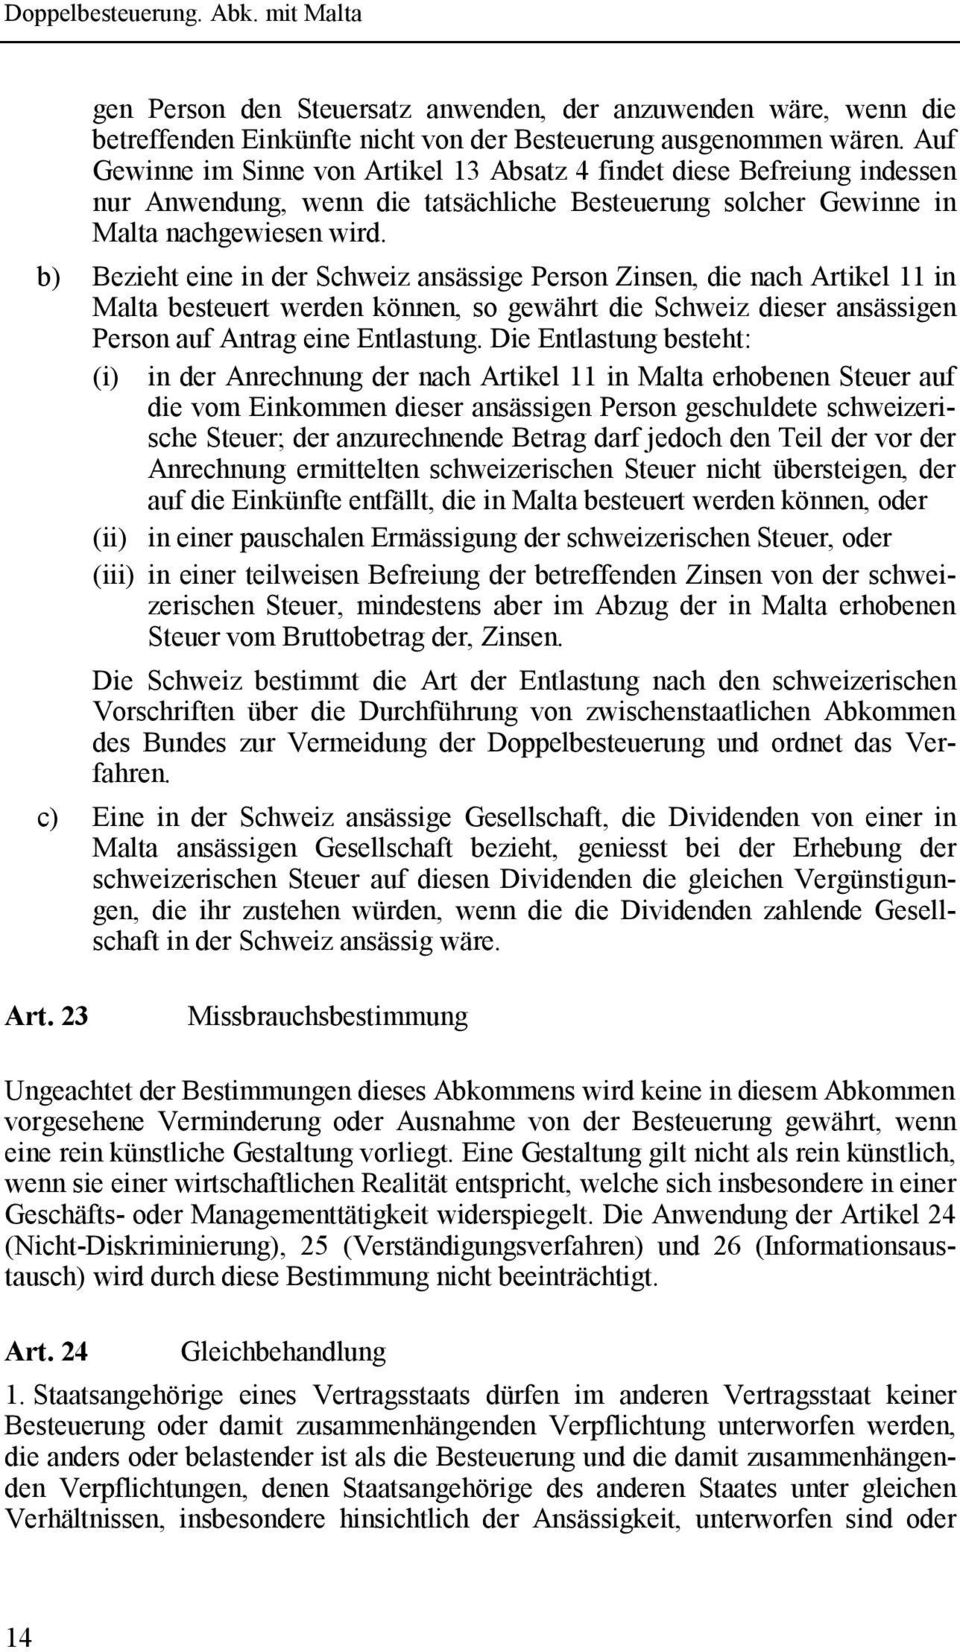 b) Bezieht eine in der Schweiz ansässige Person Zinsen, die nach Artikel 11 in Malta besteuert werden können, so gewährt die Schweiz dieser ansässigen Person auf Antrag eine Entlastung.